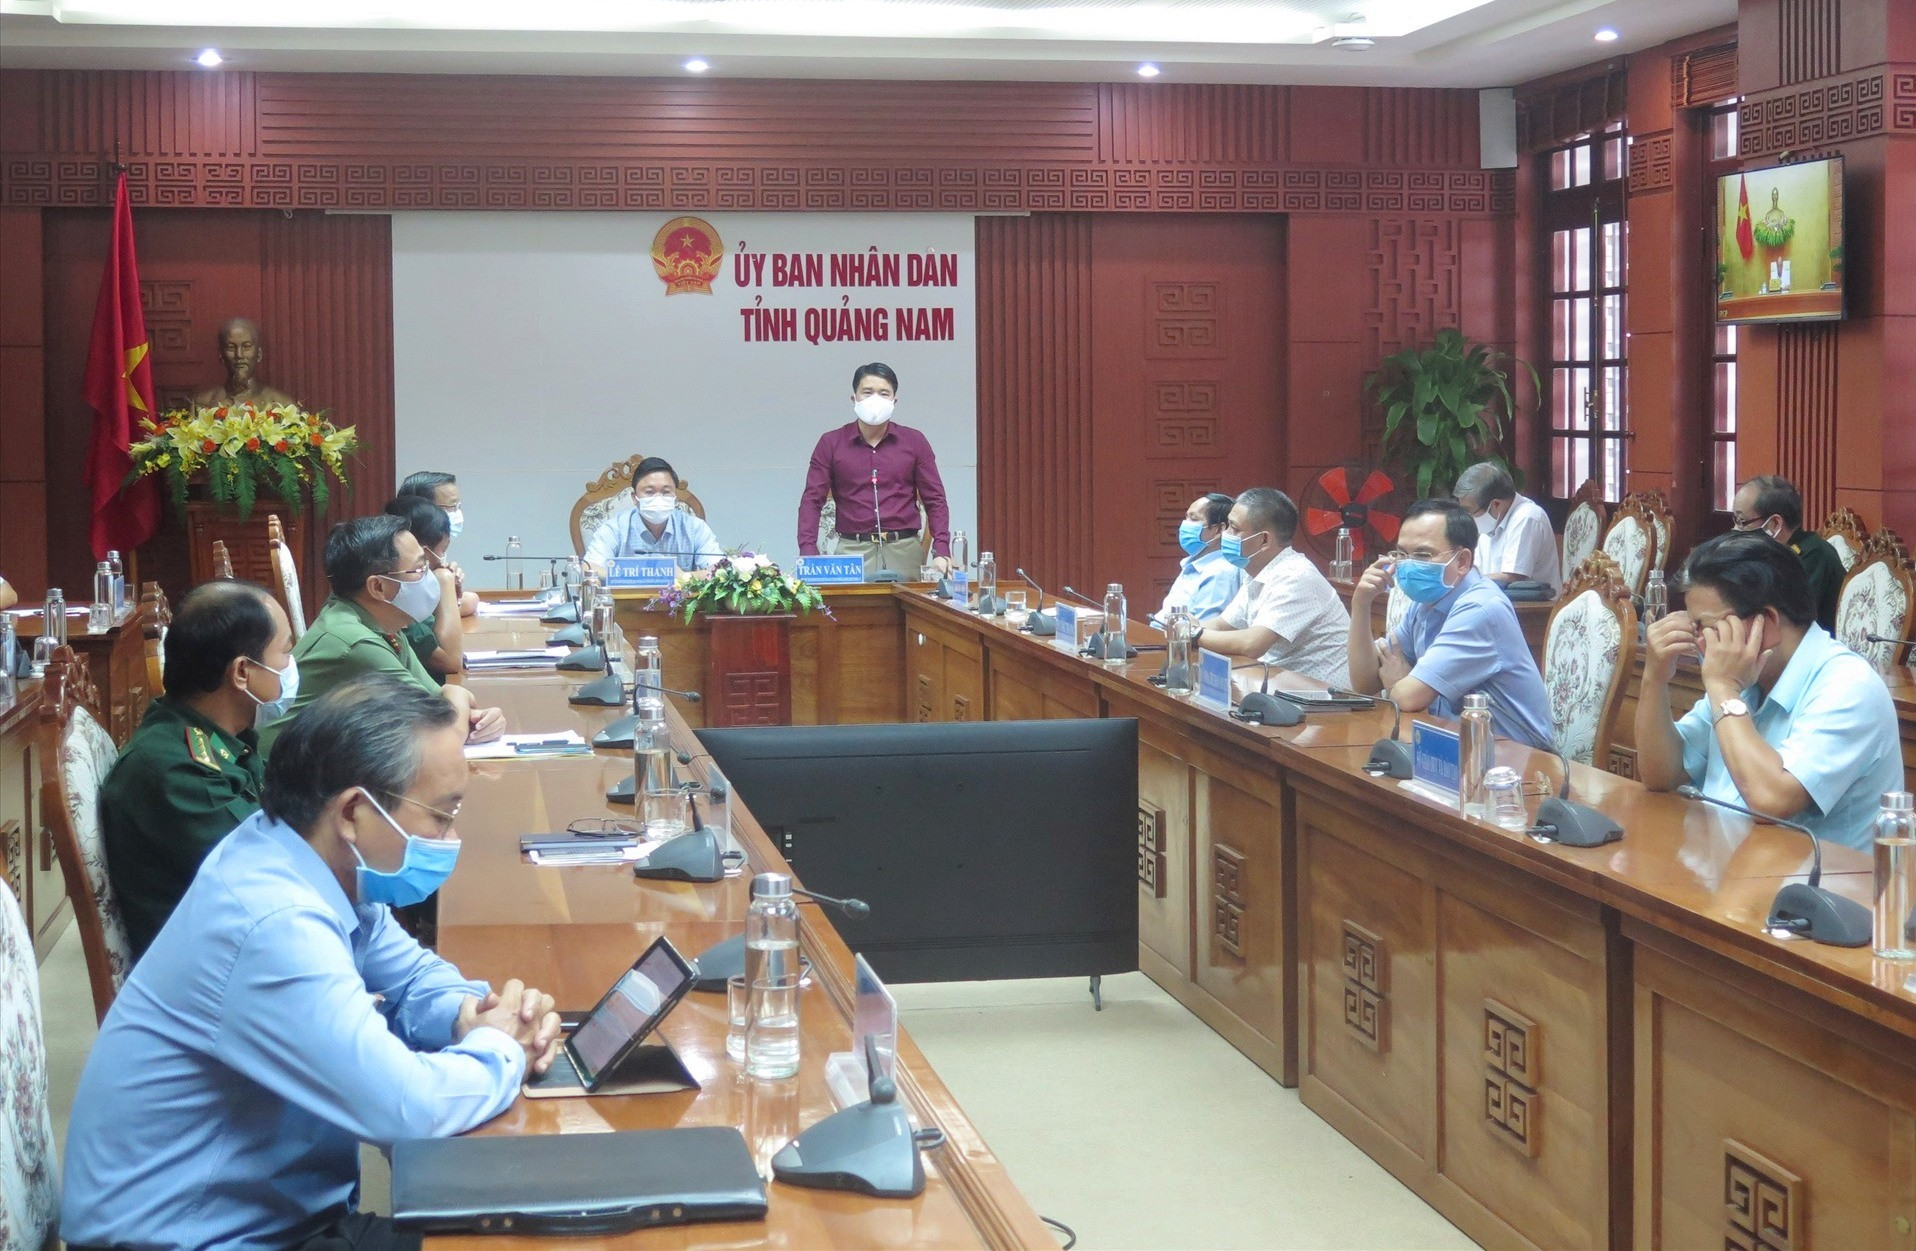 Phó Chủ tịch UBND tỉnh Trần Văn Tân báo cáo về tình hình phòng chống dịch bệnh tại Quảng Nam tại cuộc họp trực tuyến. Ảnh: X.H